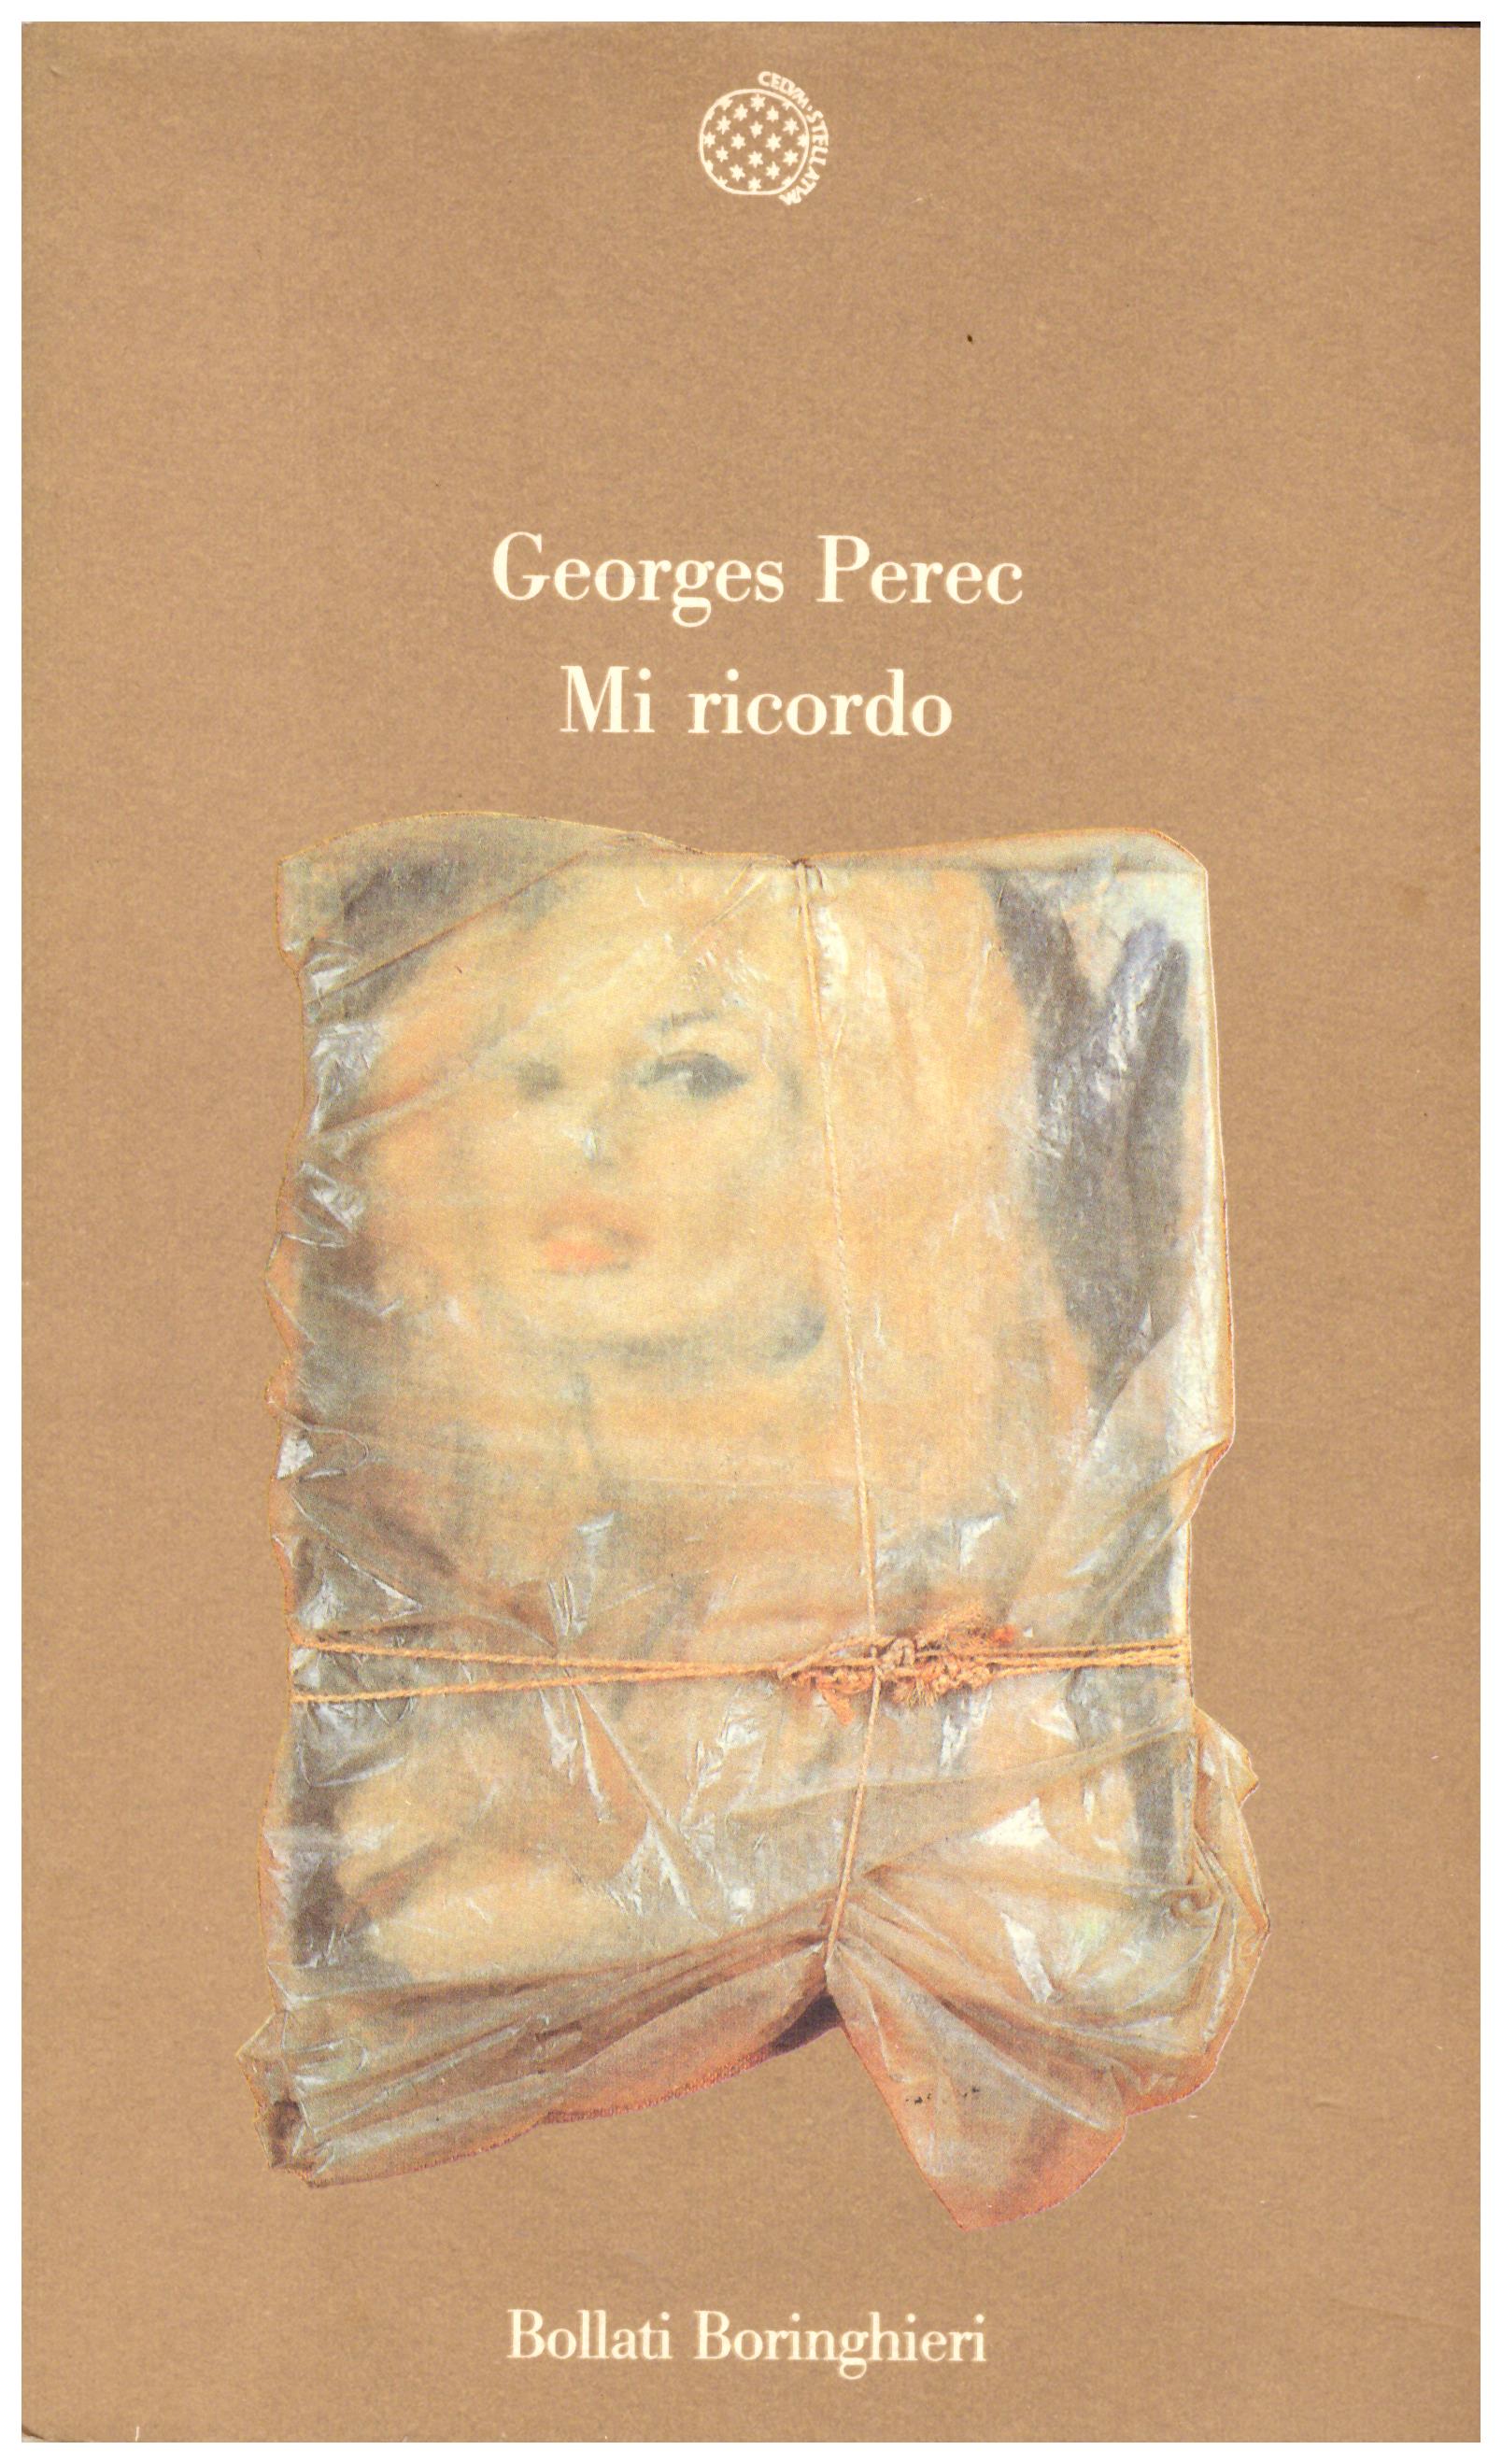 Titolo: Mi ricordo Autore: George Perec  Editore: Bollati Boringhieri, 1988